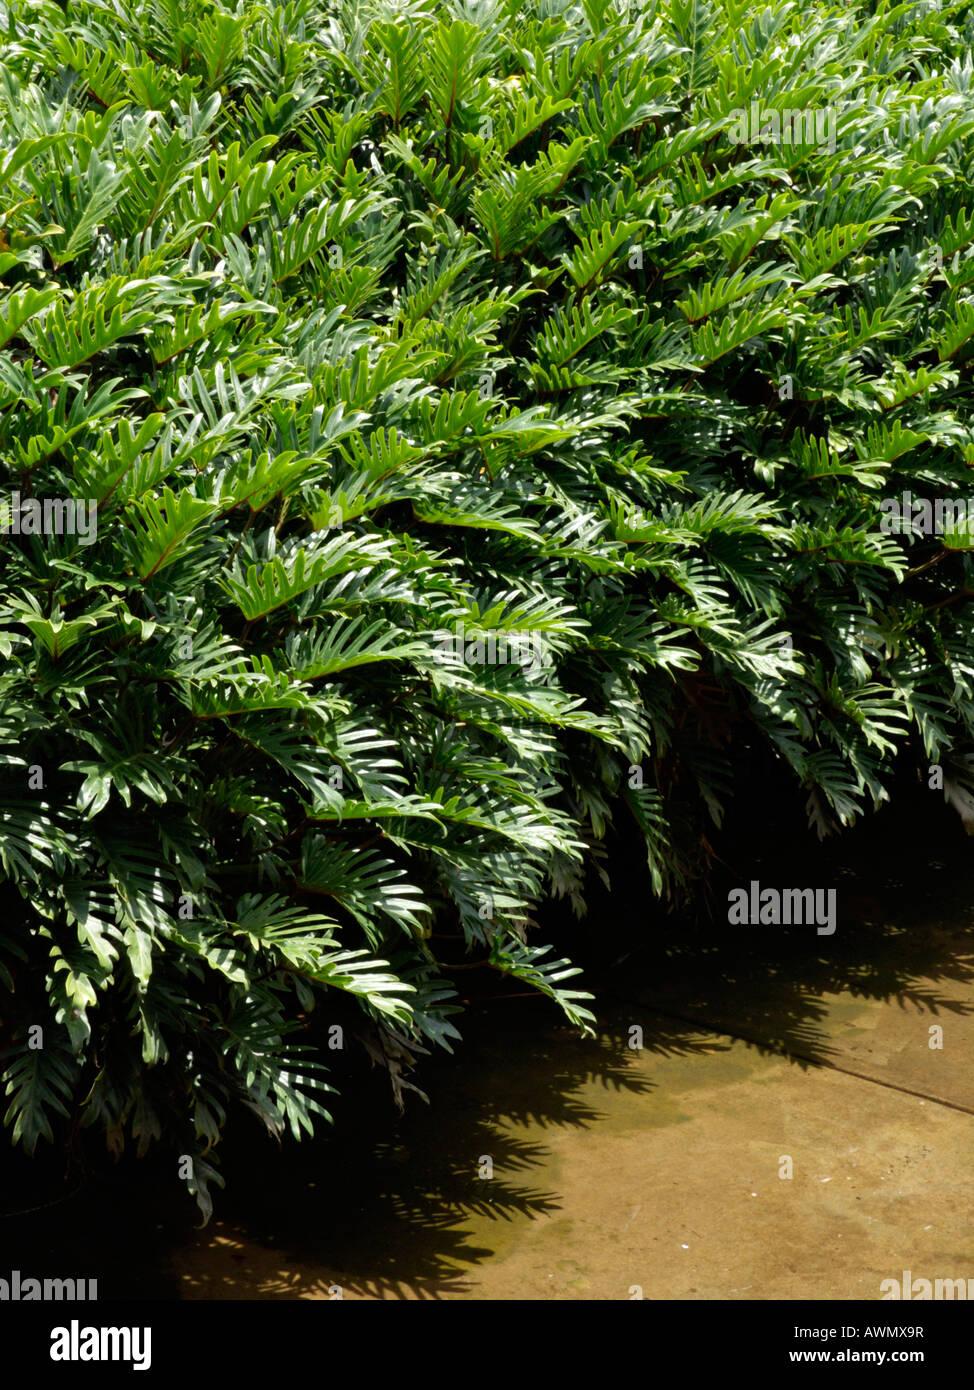 Philodendron selloum 'Xanadu' Stock Photo